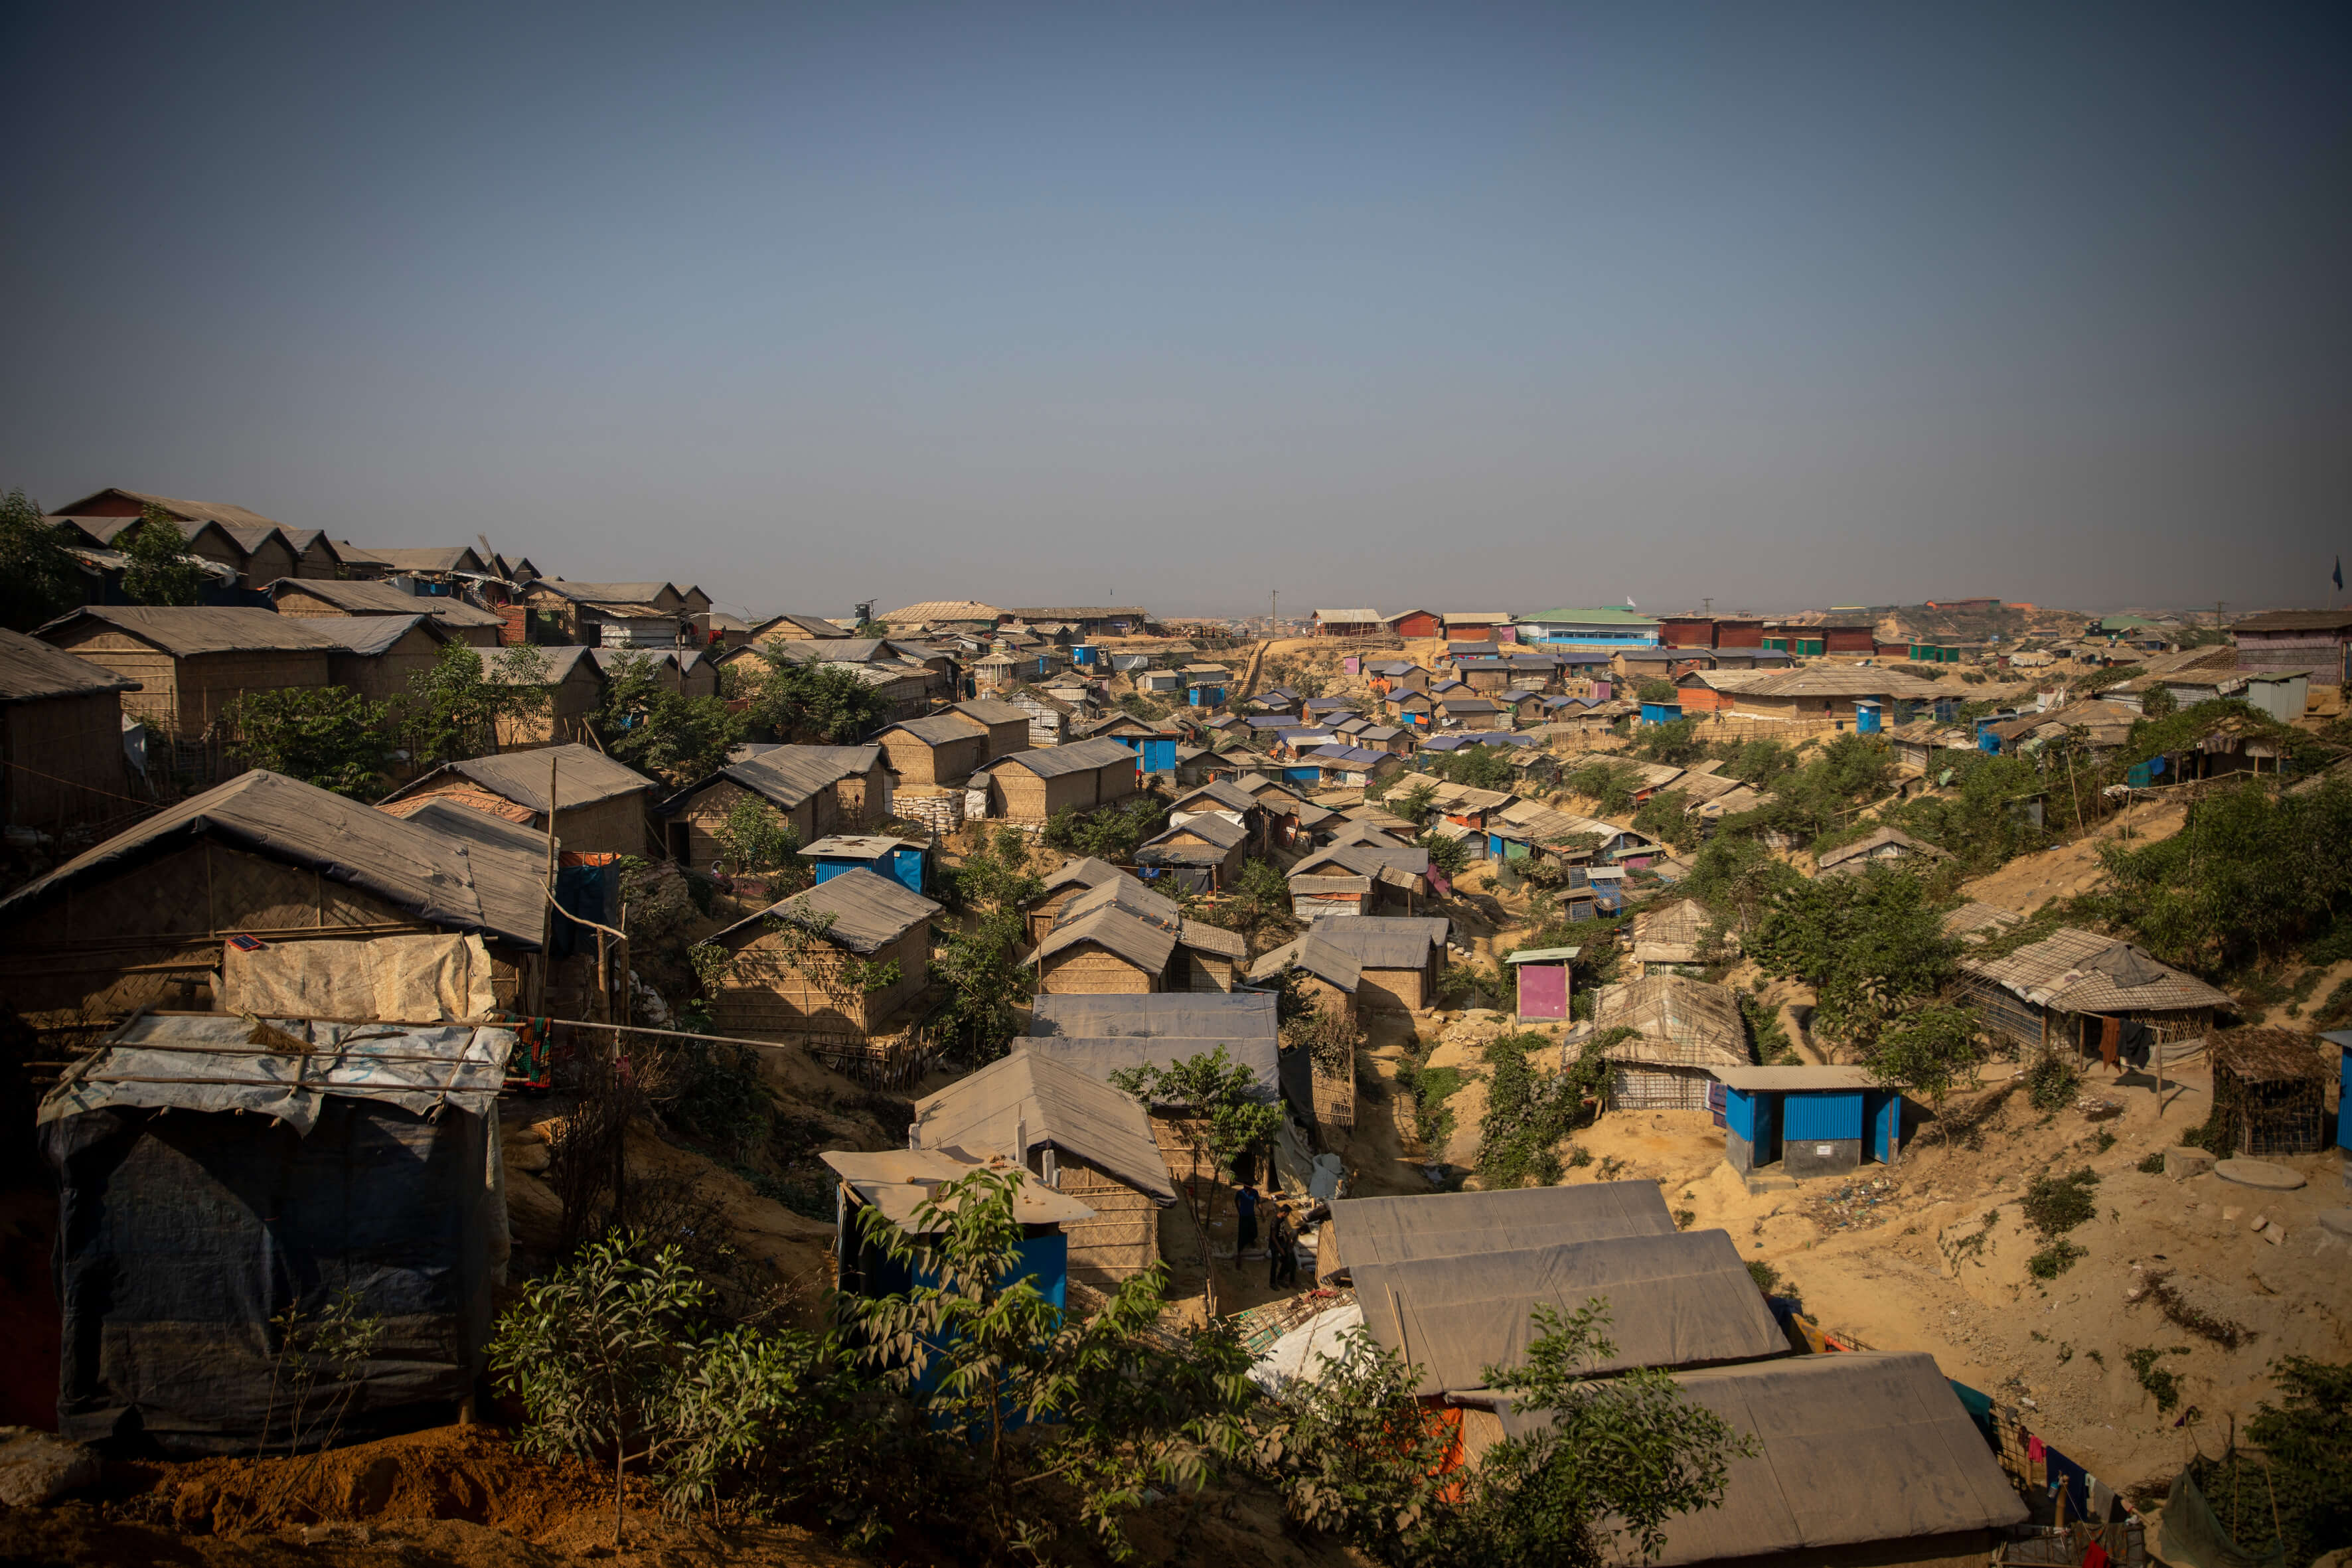 Les abris sont entassés dans les camps de réfugiés du Bangladesh, de haut en bas des collines. Le terrain est difficile pour certaines personnes âgées, en particulier celles à mobilité réduite, ce qui pose des problèmes d'accès aux latrines, aux sites de distribution et aux installations sanitaires, Bangladesh, 20 février 2019. Plus de 900 000 femmes, hommes et enfants Rohingyas vivent dans 34 camps de réfugiés au Bangladesh, suite aux atrocités commises par l'armée du Myanmar.